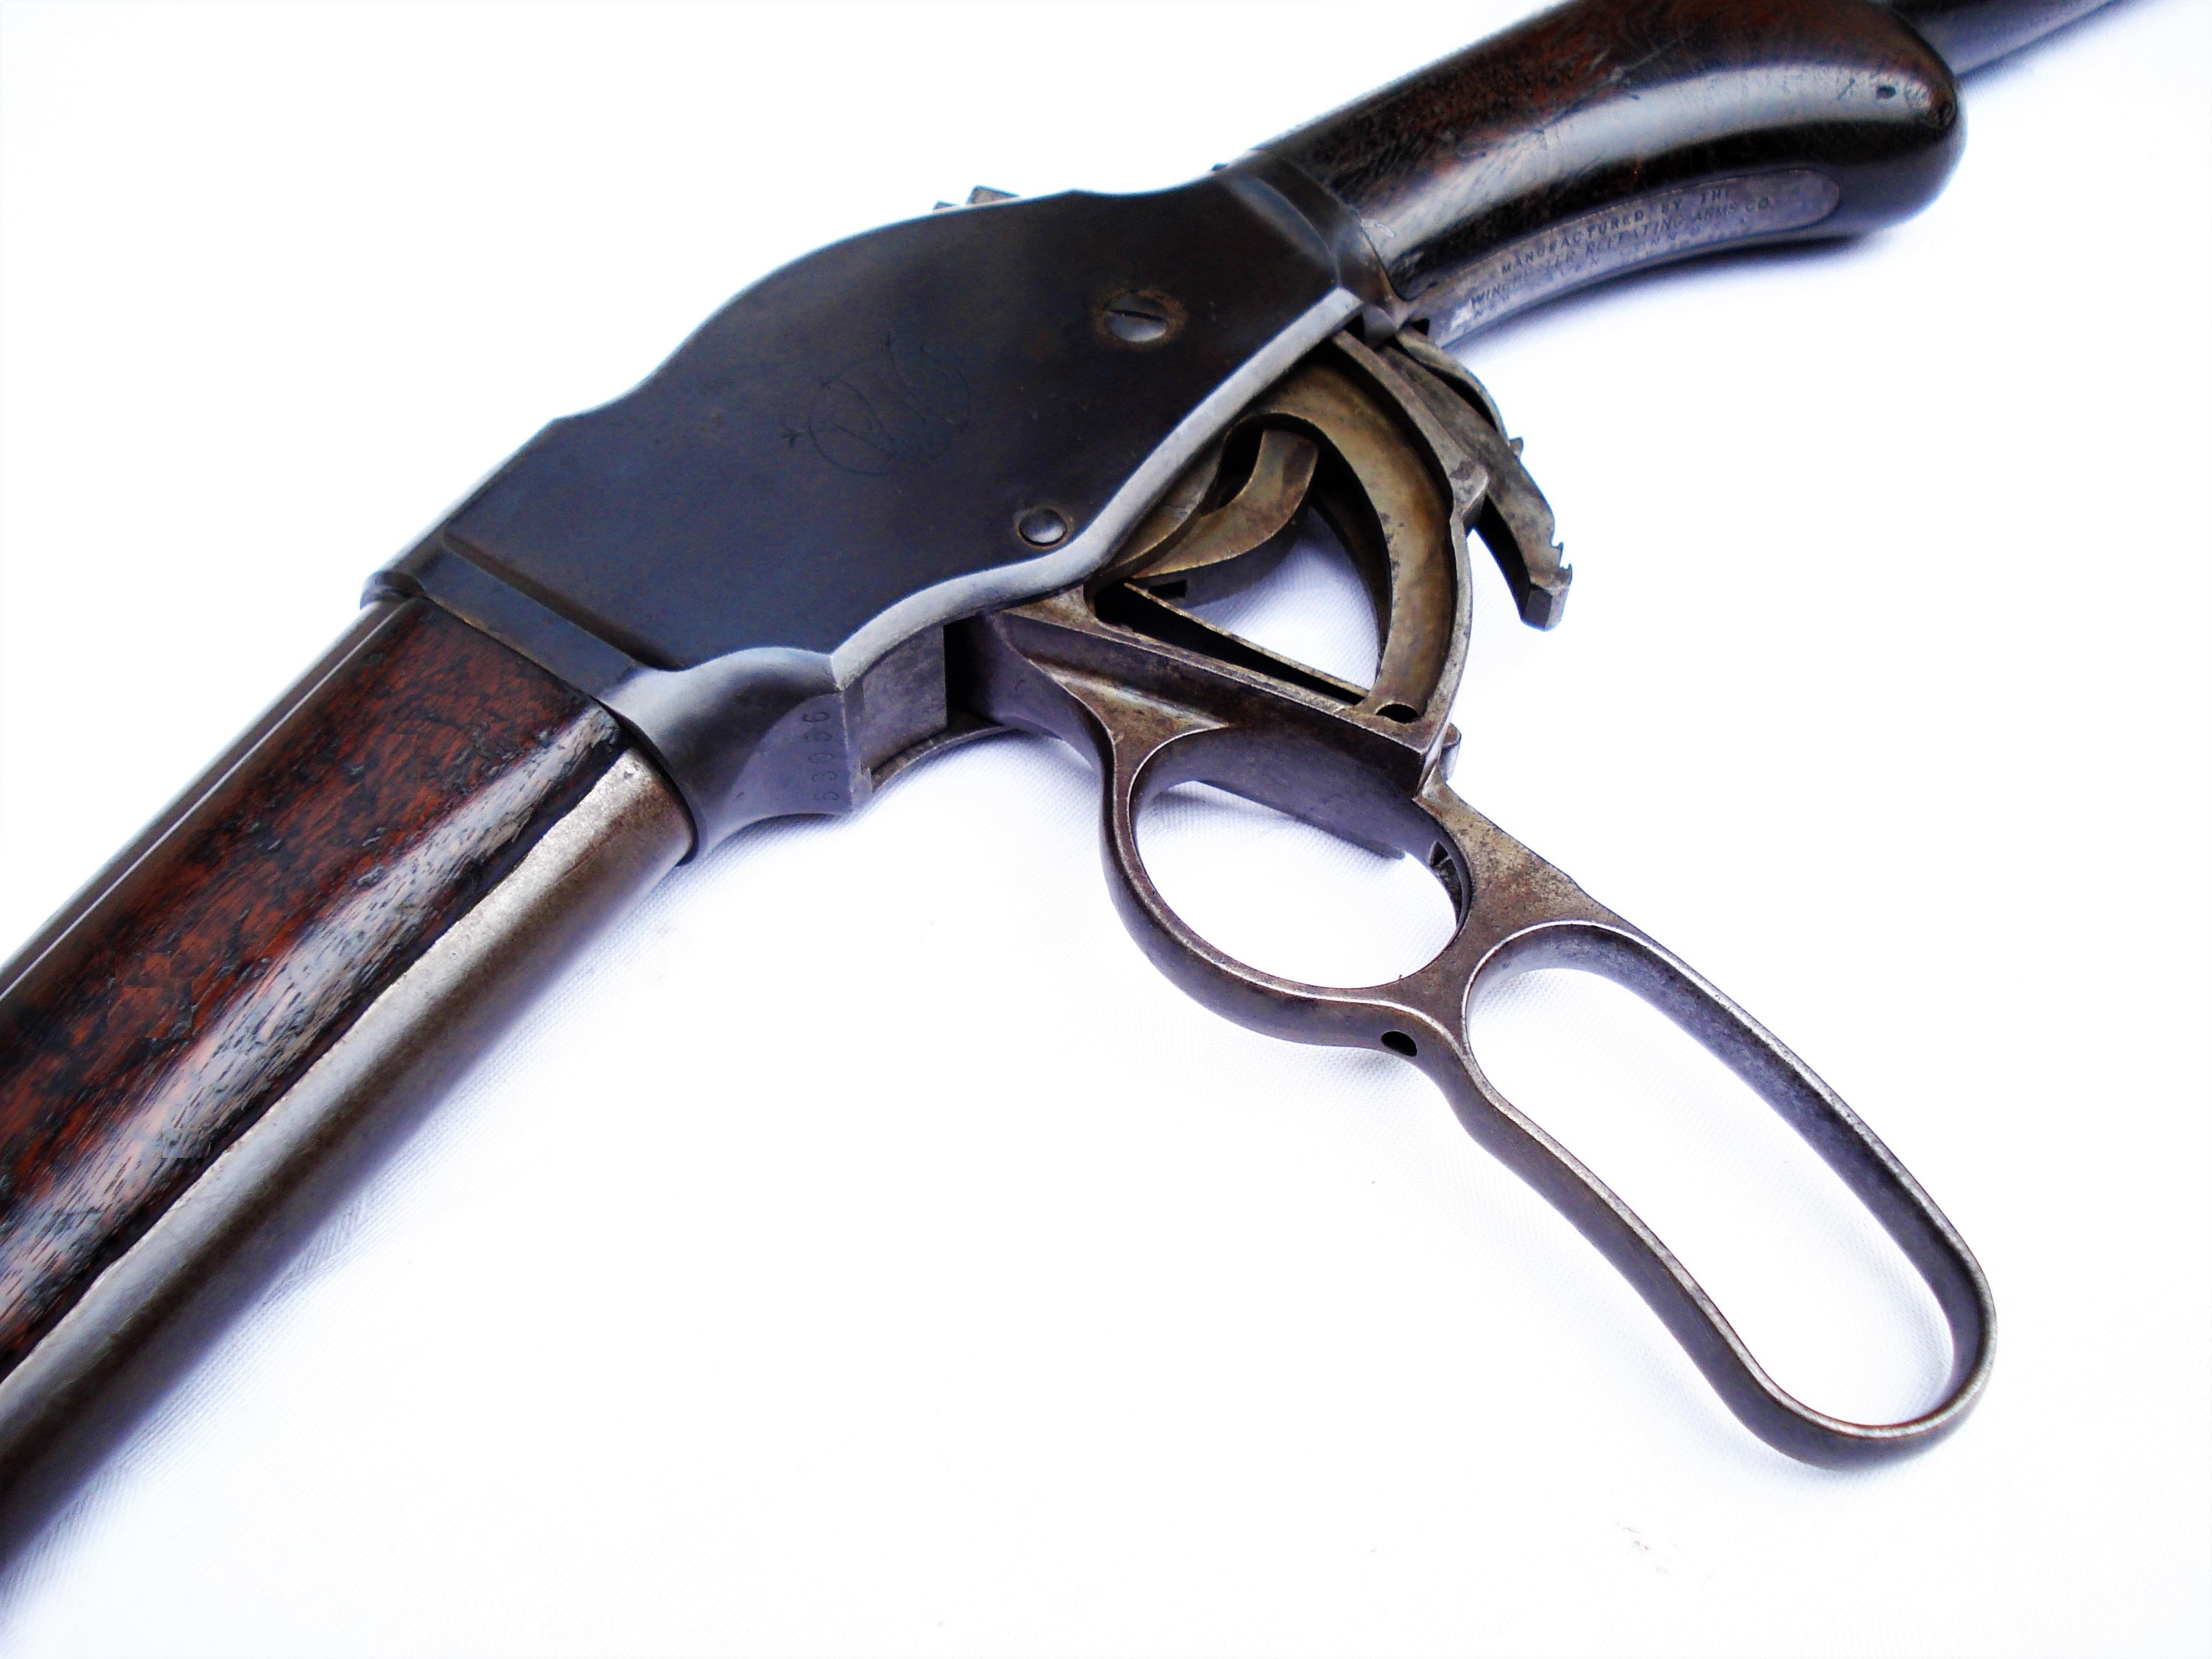 Antique Winchester 1887 shotgun 12 gauge (sold) - Wild West Originals.